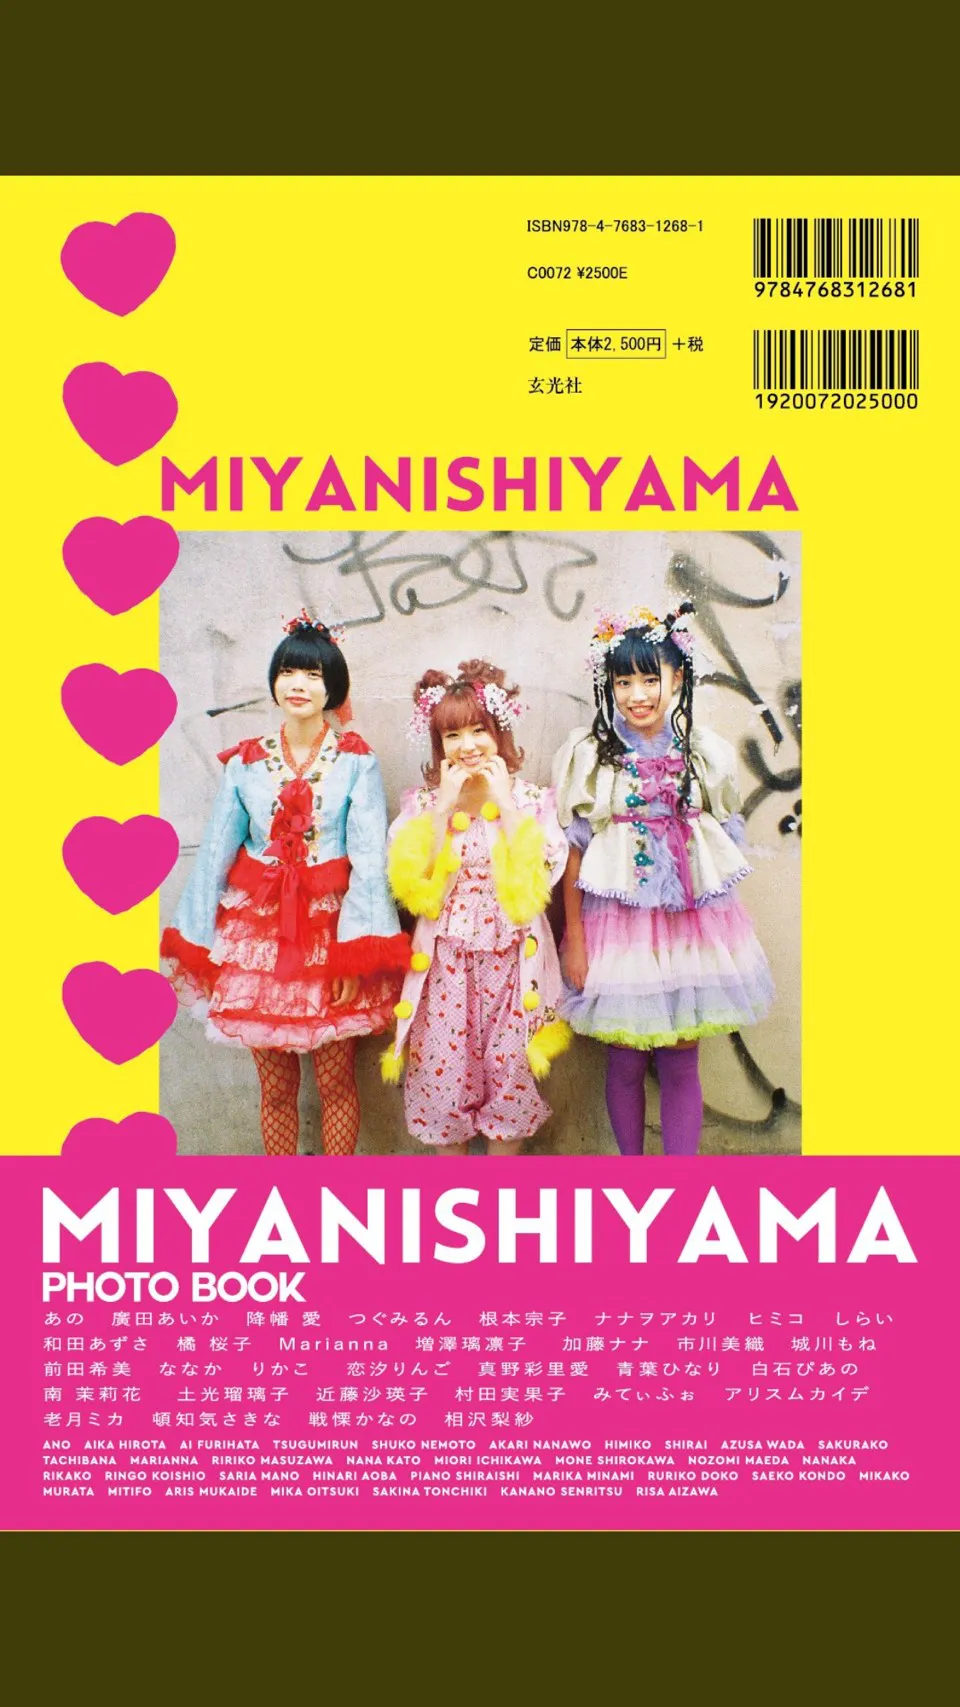 『MIYANISHIYAMA PHOTO BOOK 100万回のかわいい!!!』より